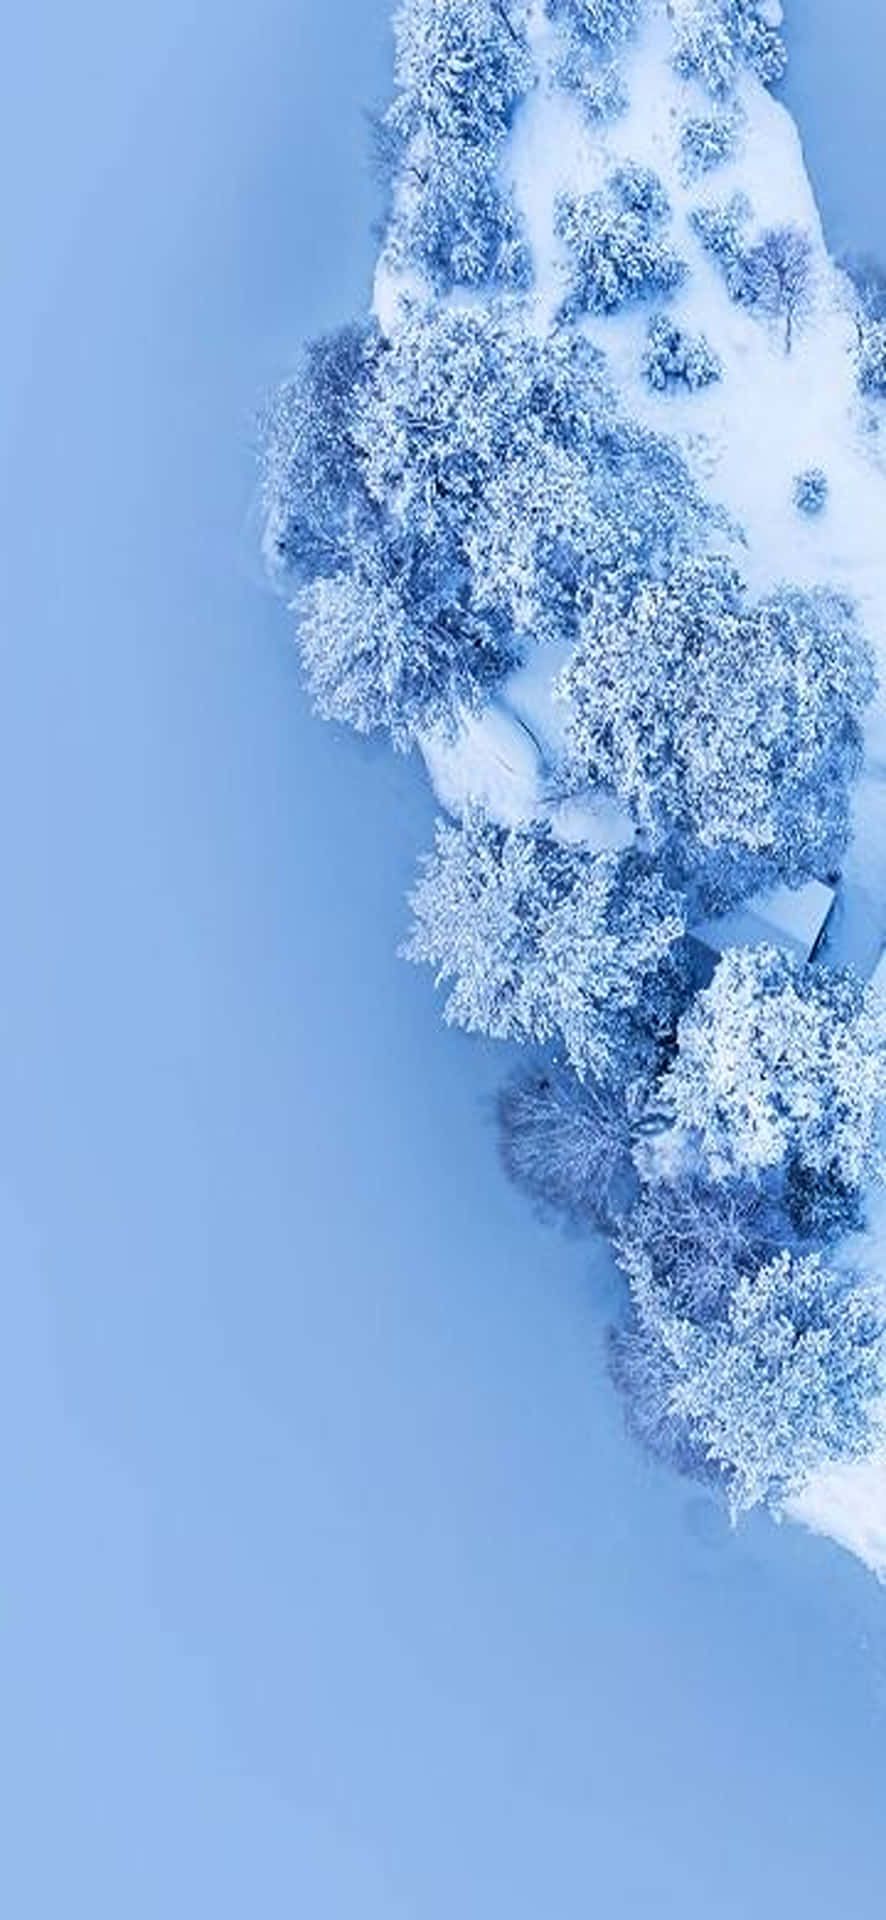 Njutav En Vinterunderland Med Denna Vackra Snölandskaps Skrivbordsbakgrund. Wallpaper